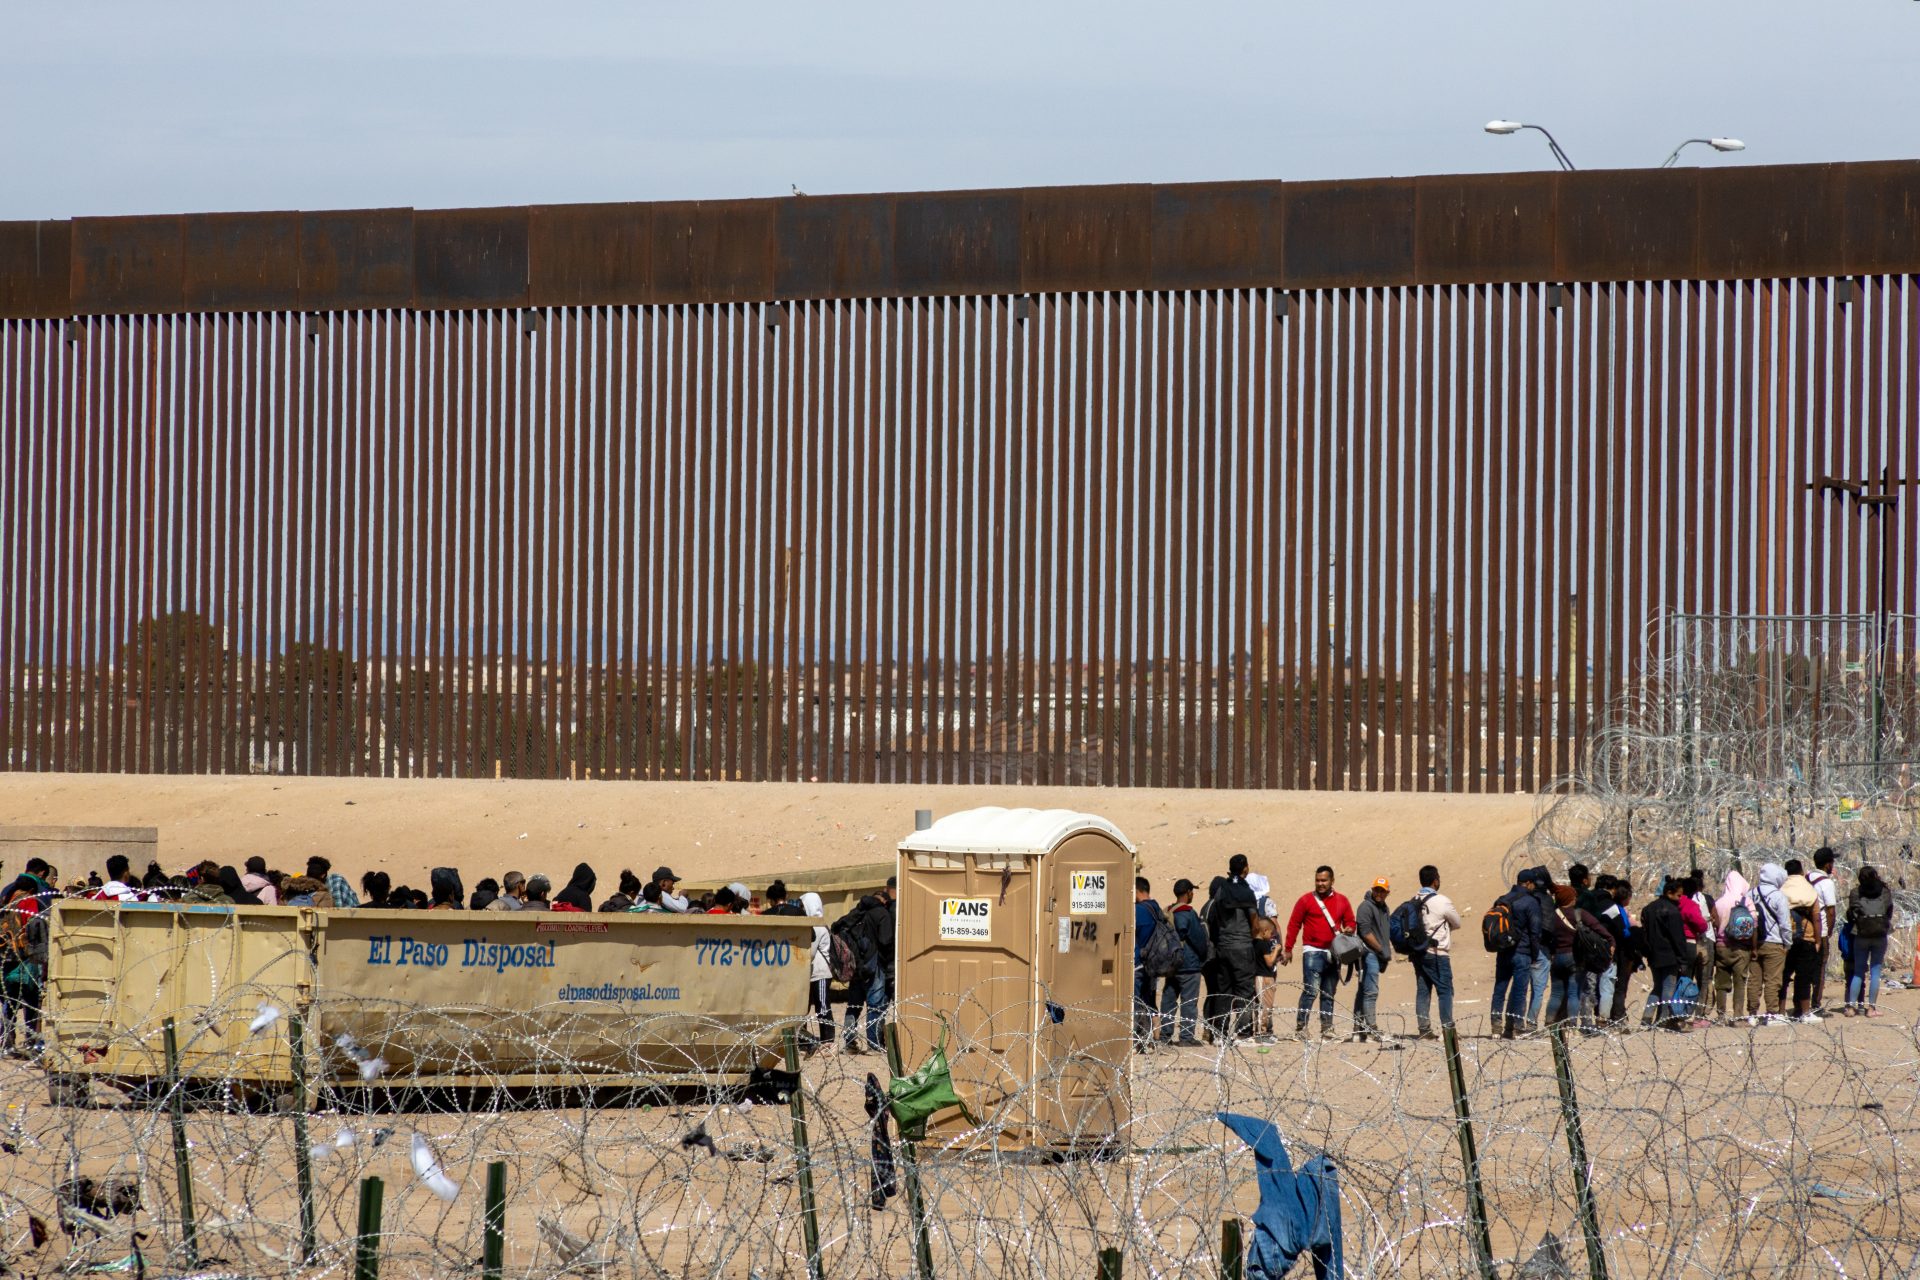 Gli immigrati privi di documenti verranno deportati